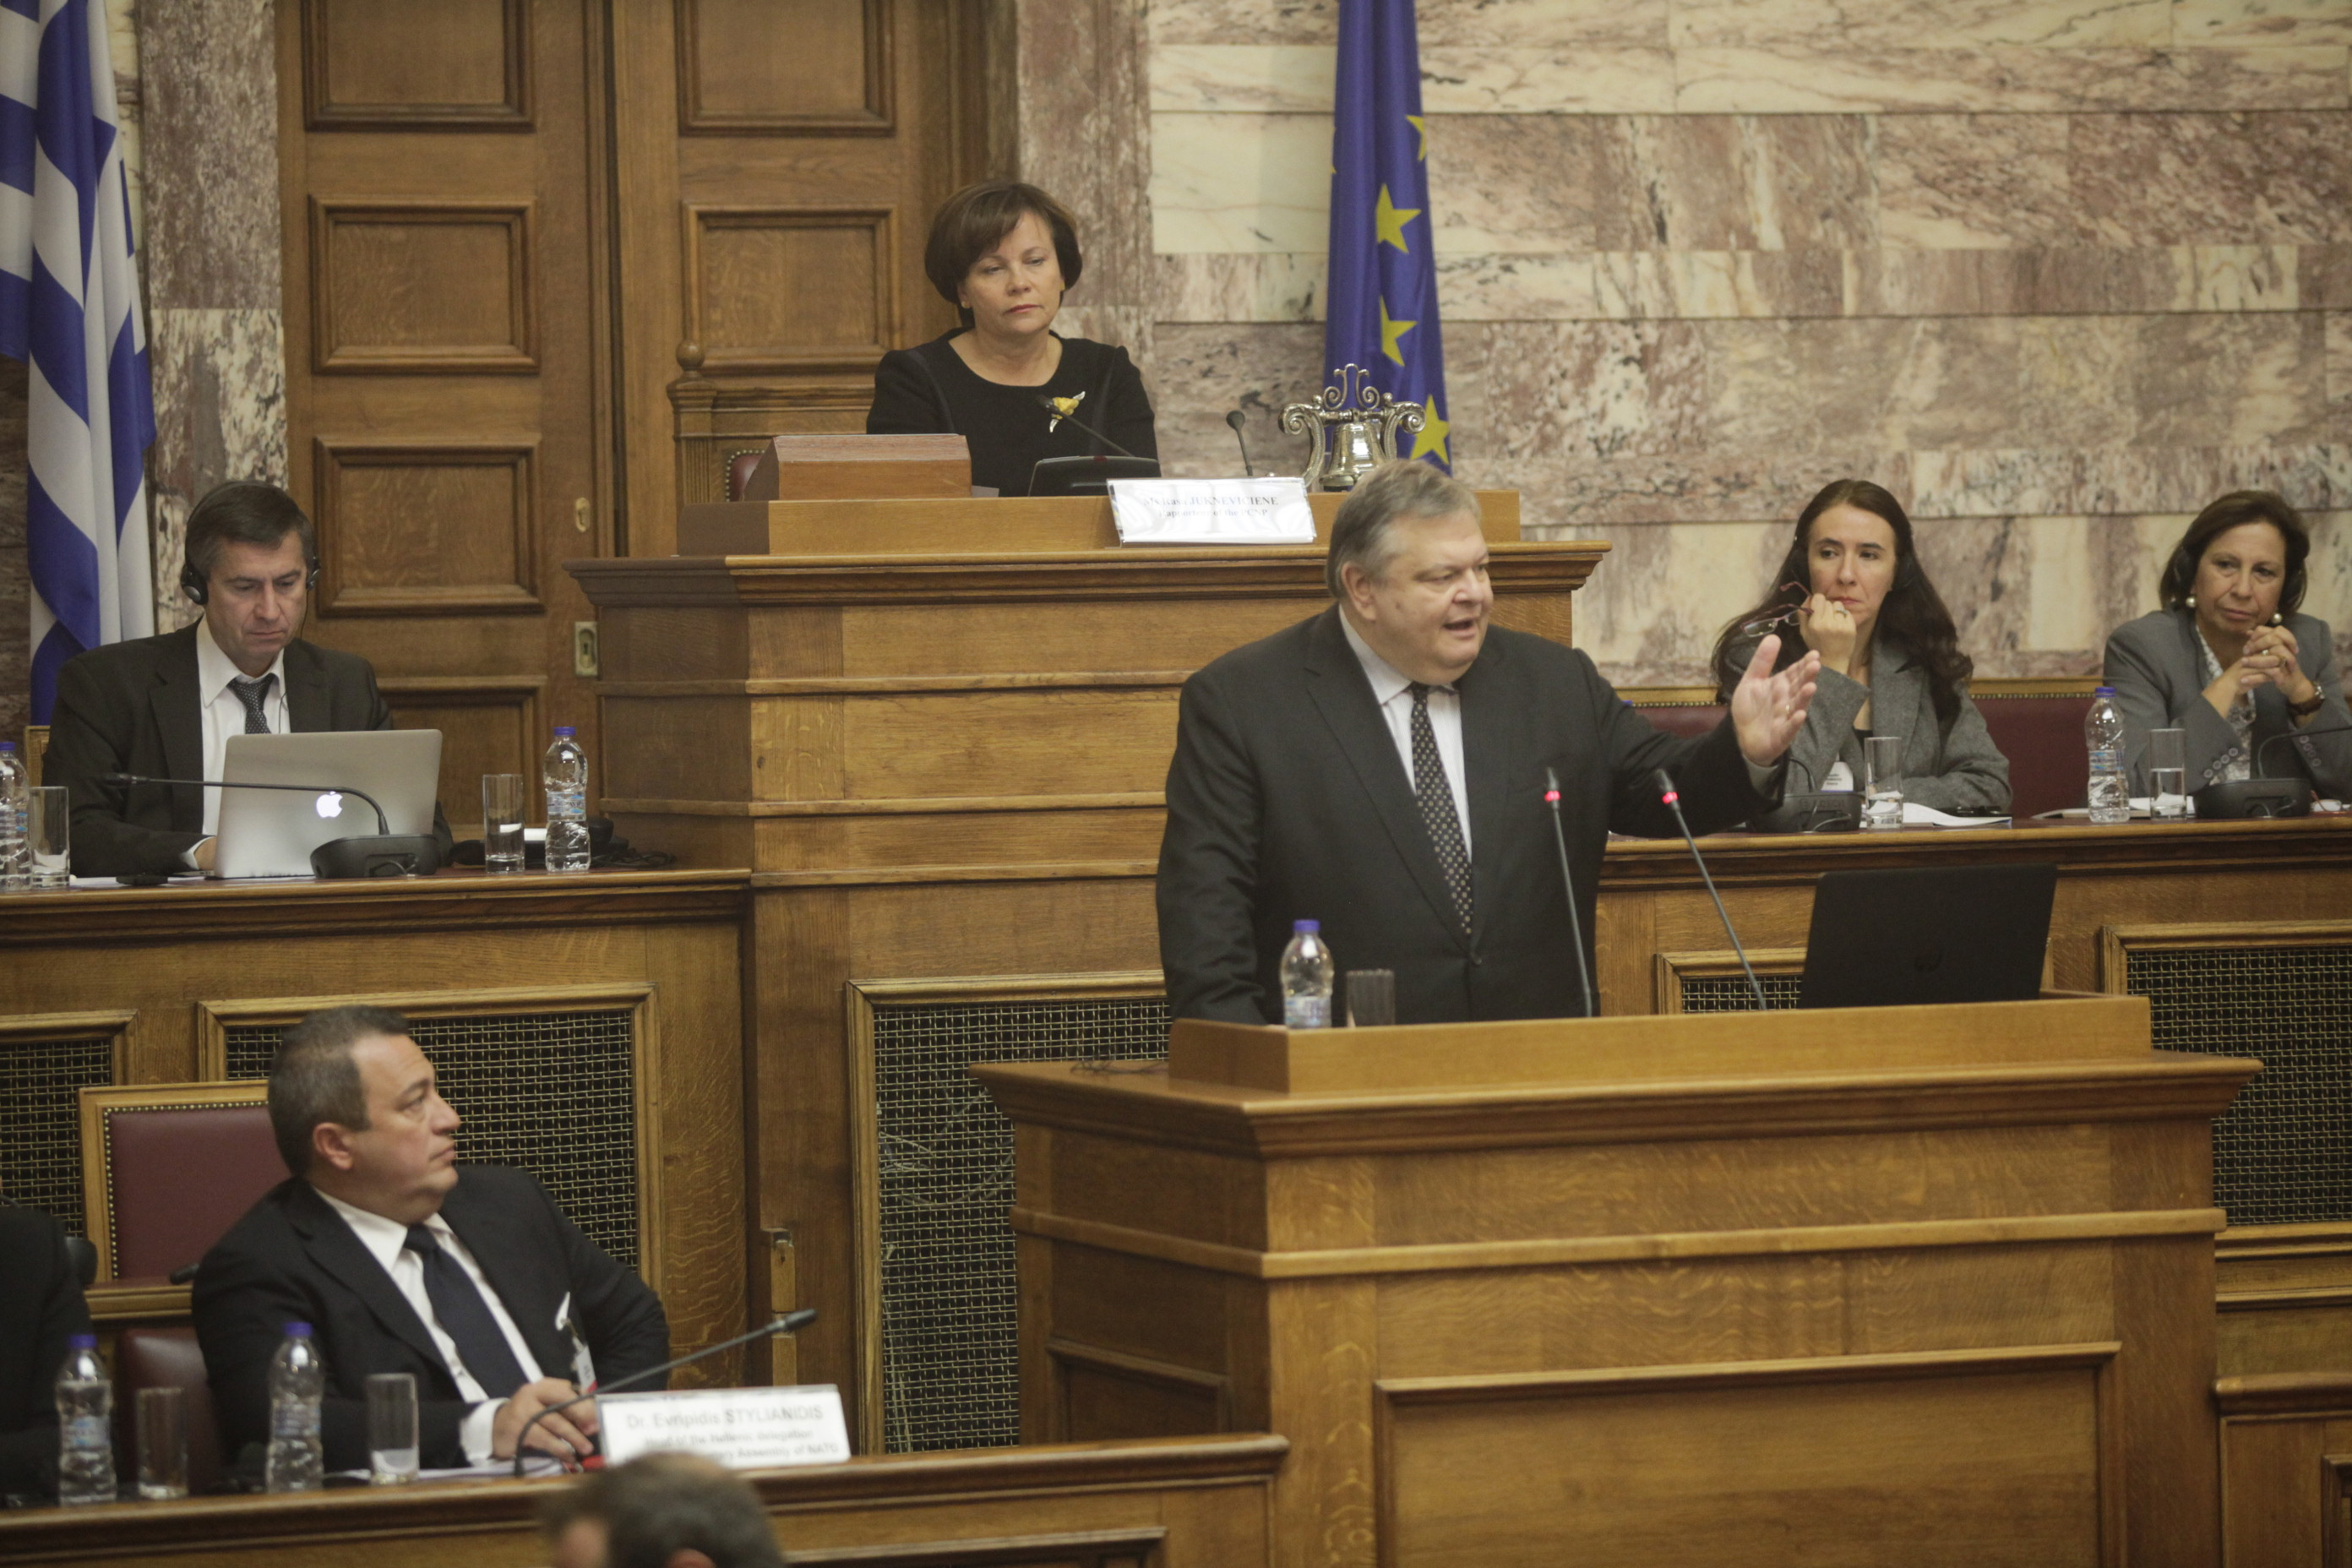 Πρόκληση τούρκου βουλευτή μέσα στην ελληνική Βουλή – Οργισμένη απάντηση Βενιζέλου